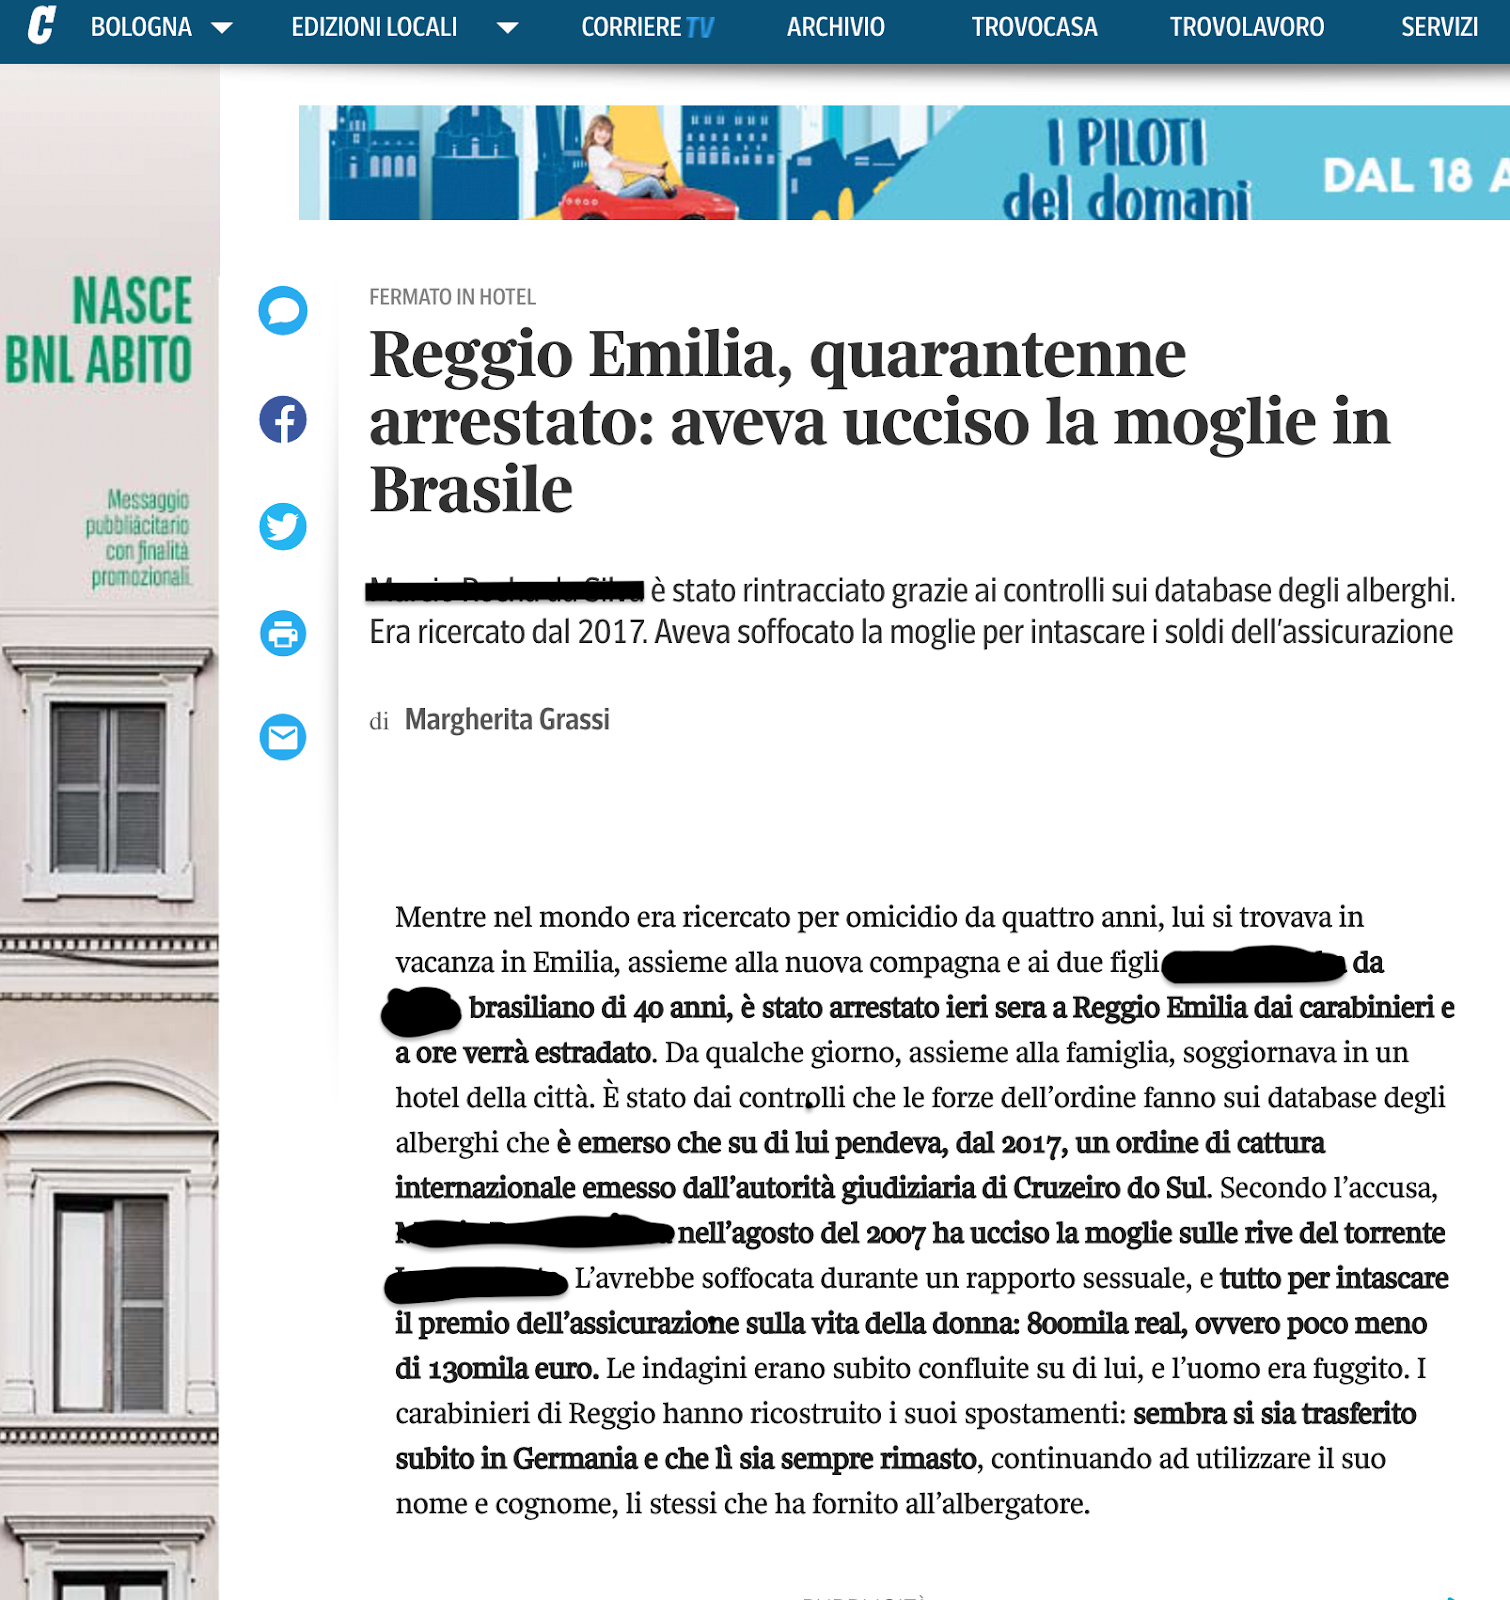 Noticia publicada por Il Corriere di Bologna.